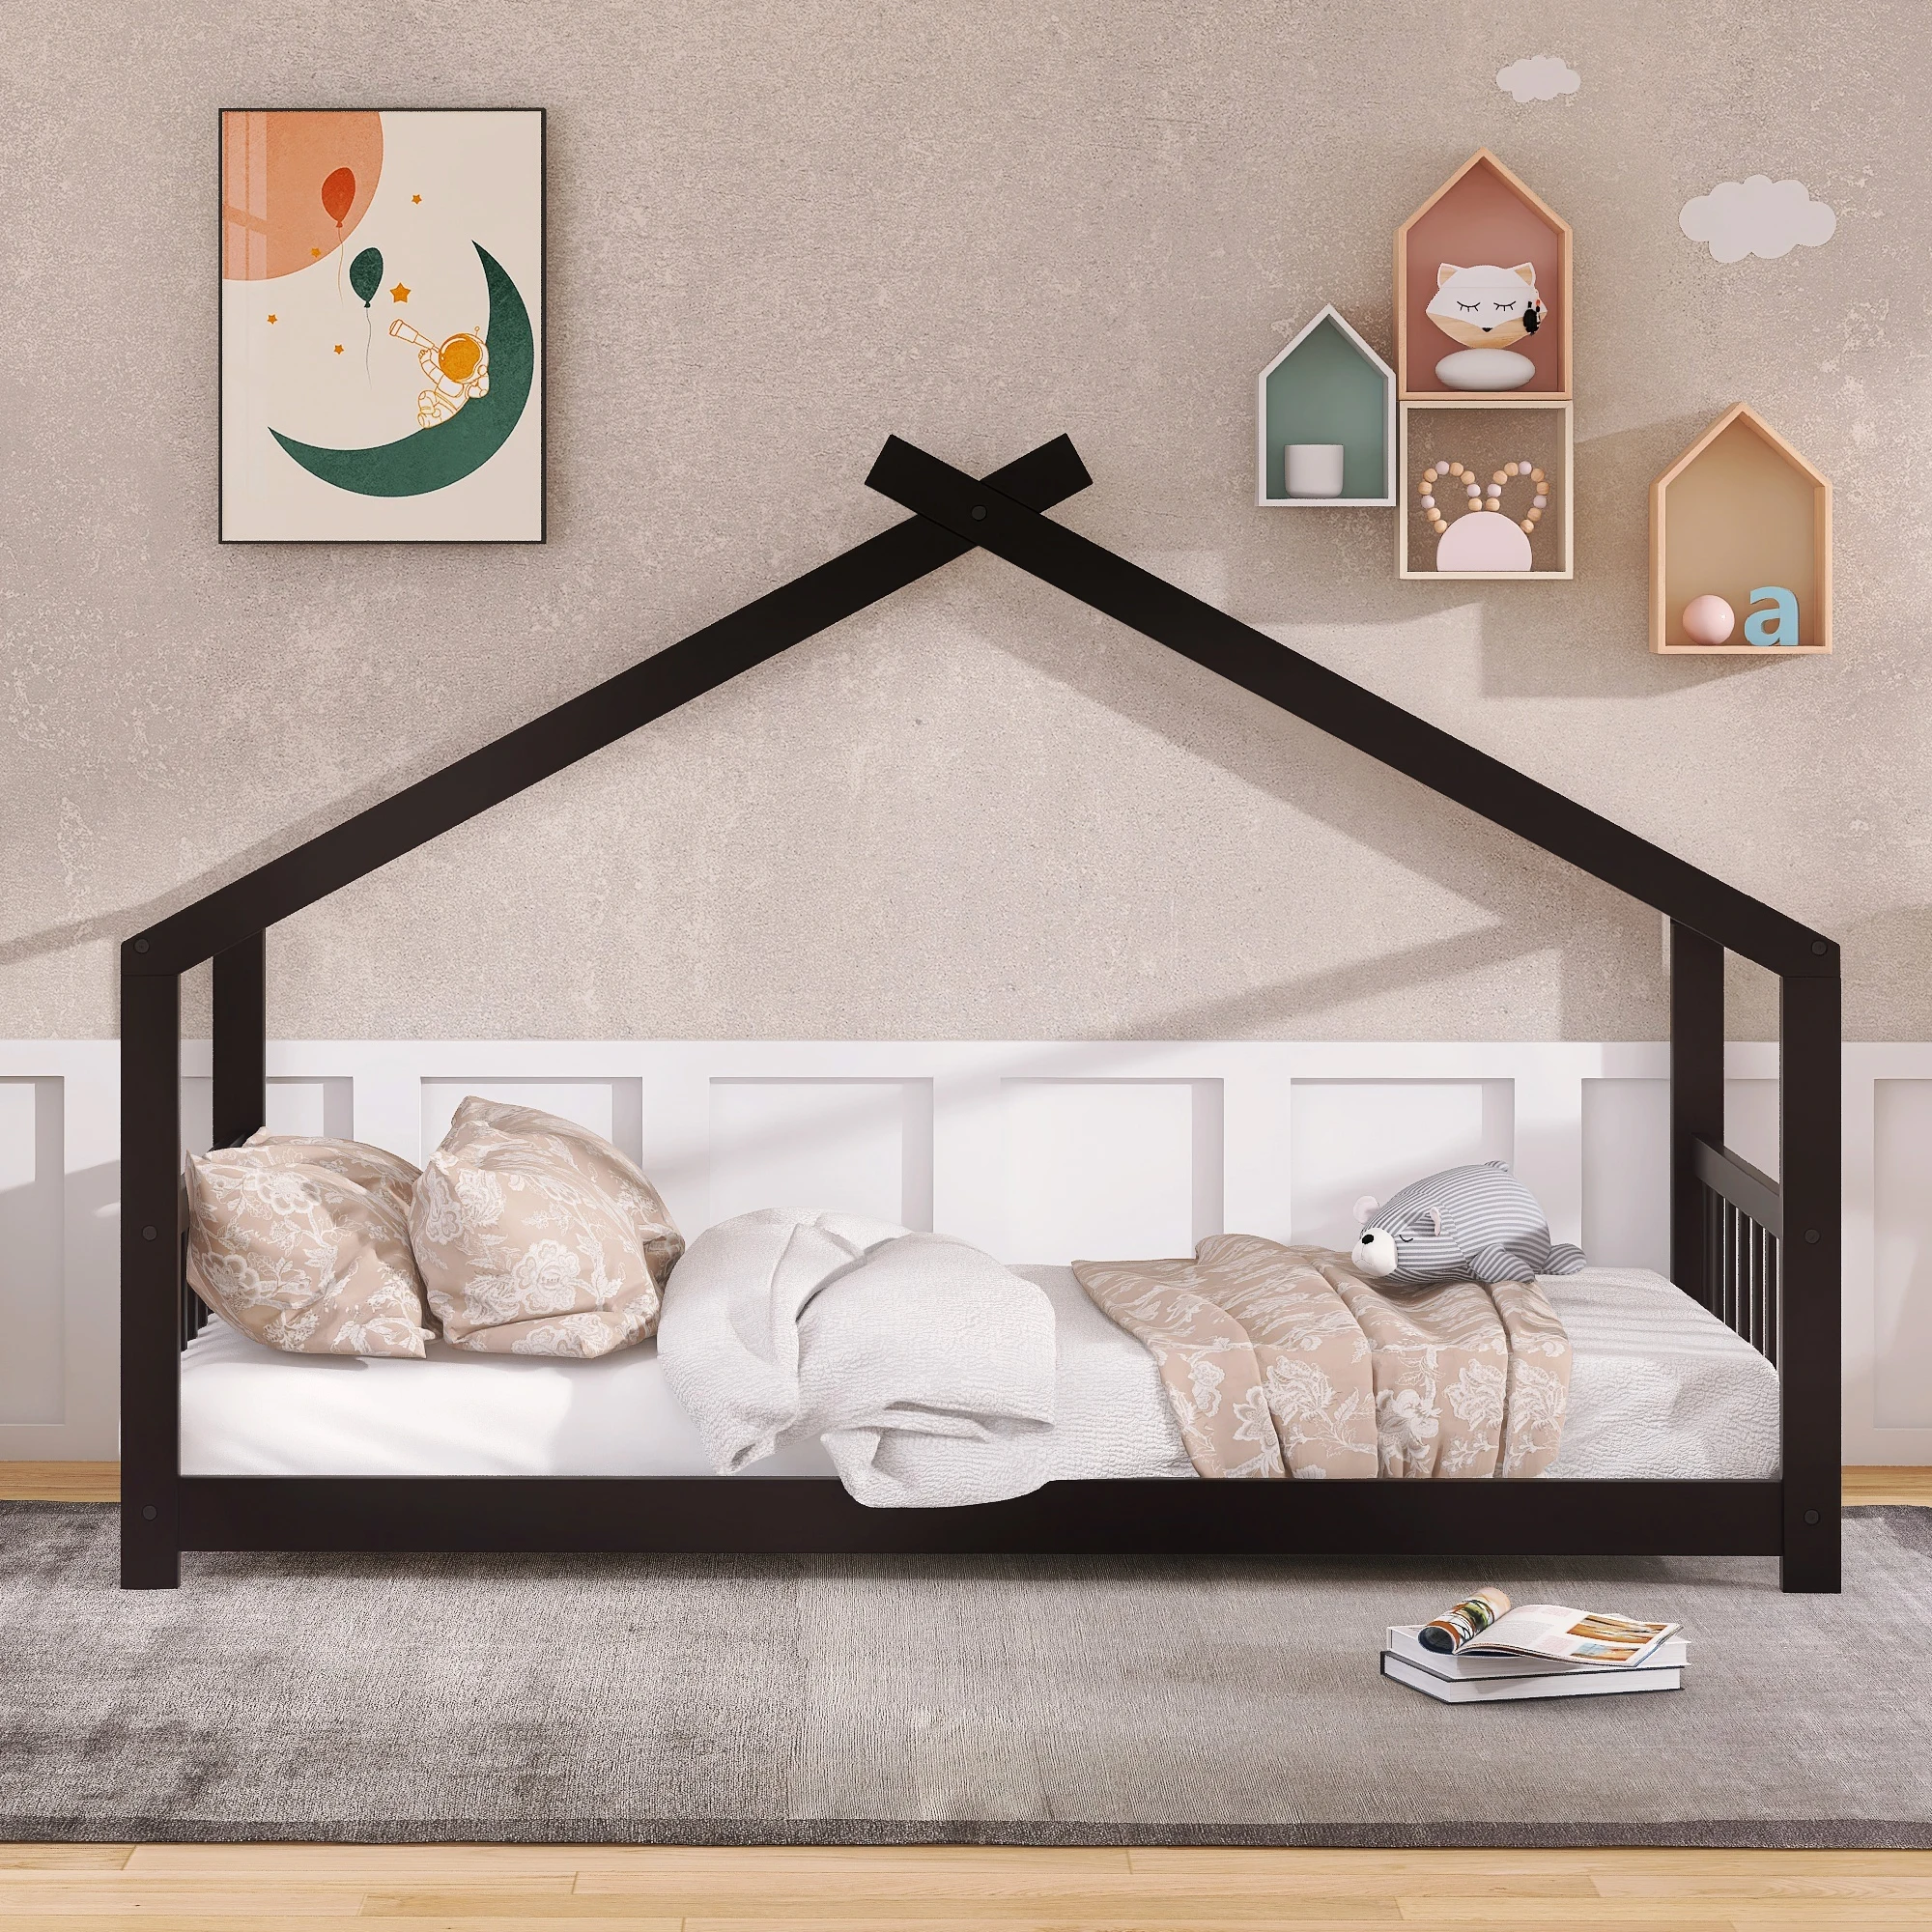 Деревянная кровать для дома Twin Size ручной работы с двумя выдвижными ящиками - забавное и функциональное дополнение к детской комнате